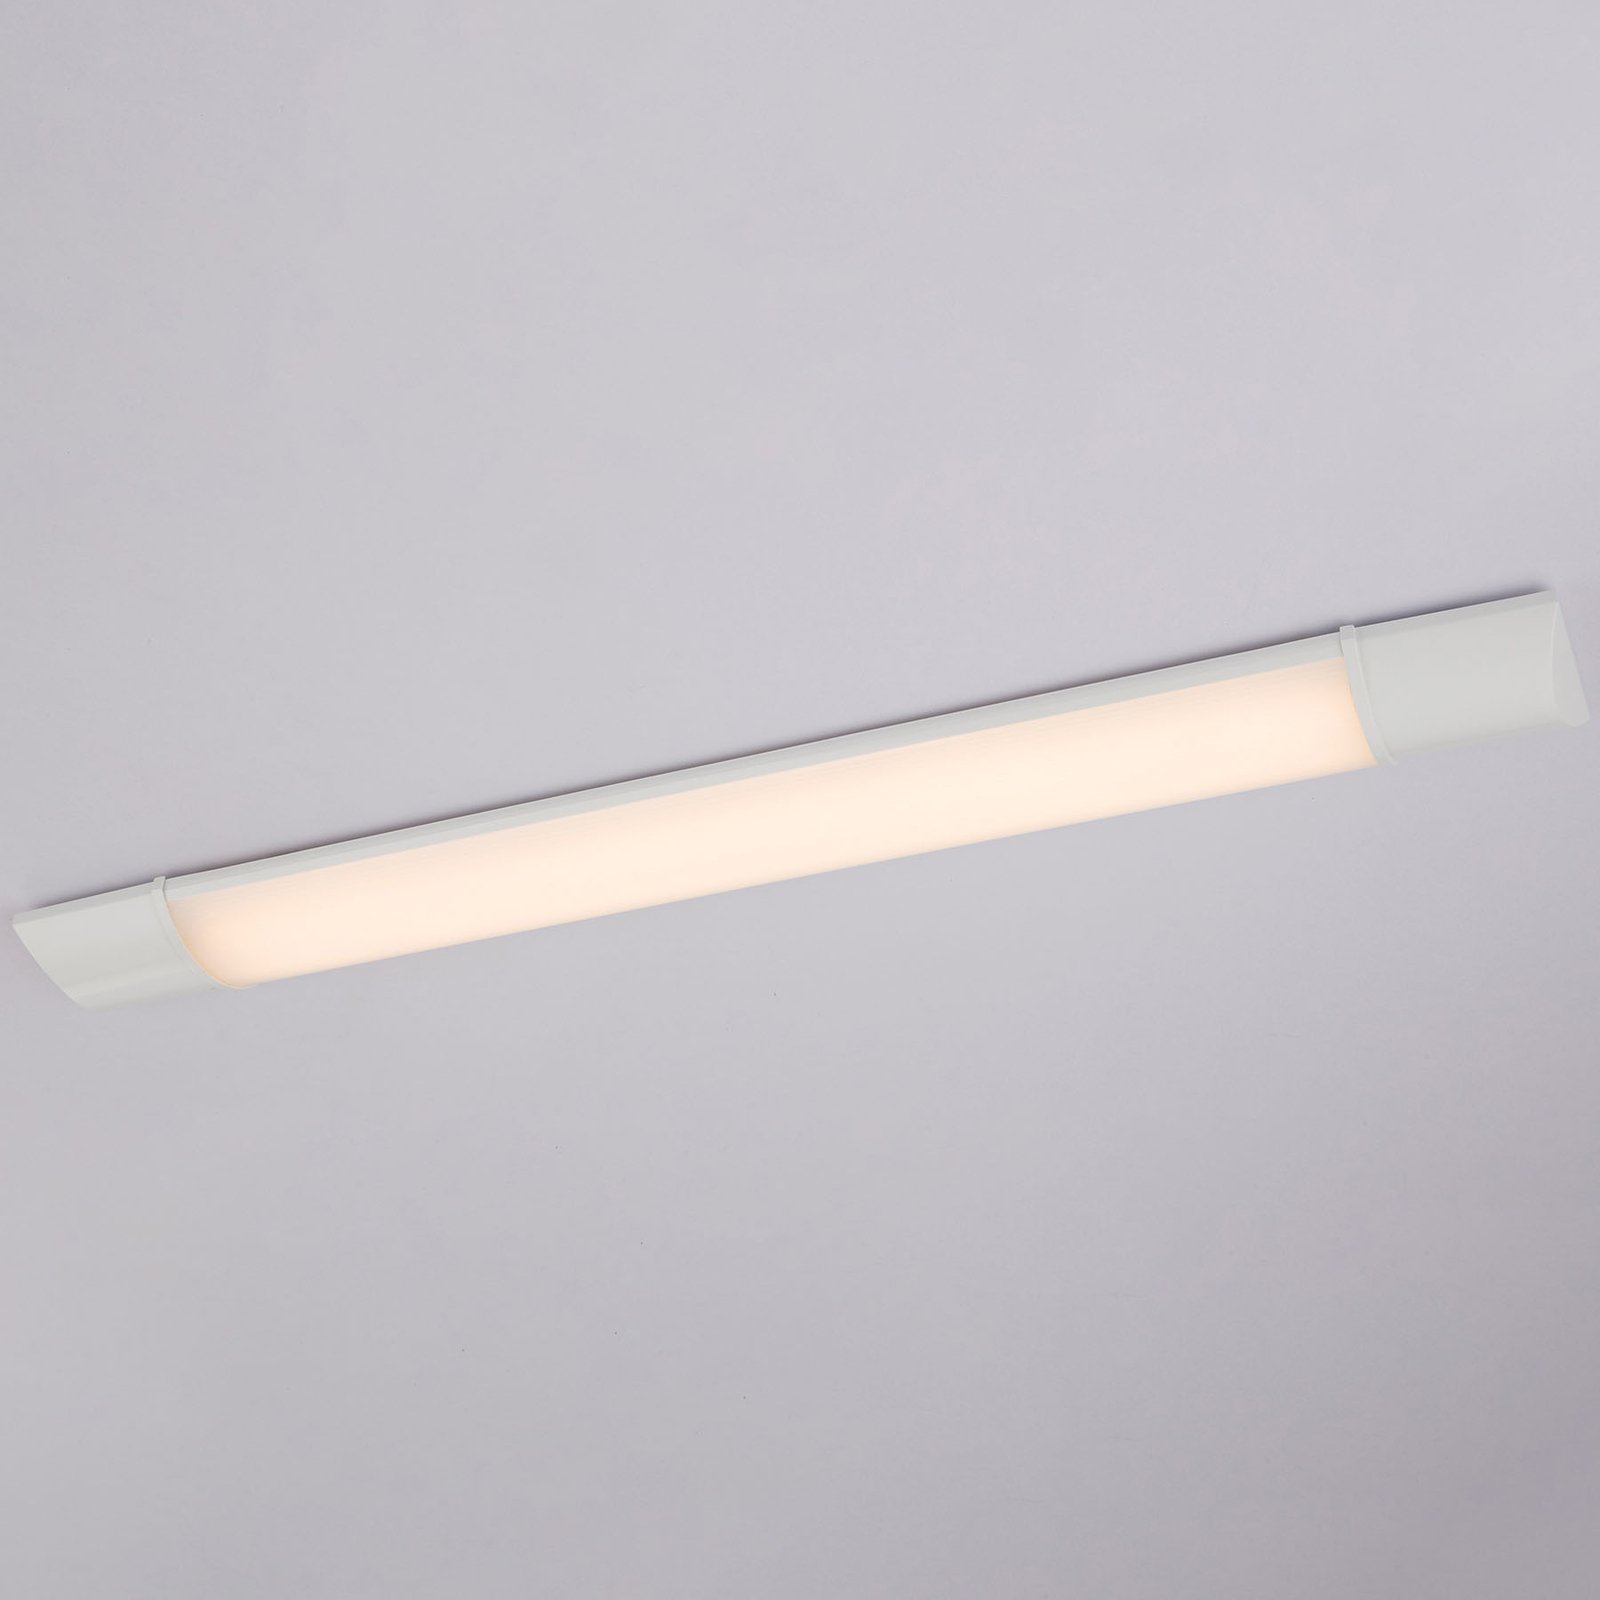 LED-Unterbauleuchte Obara, IP20, 90 cm lang